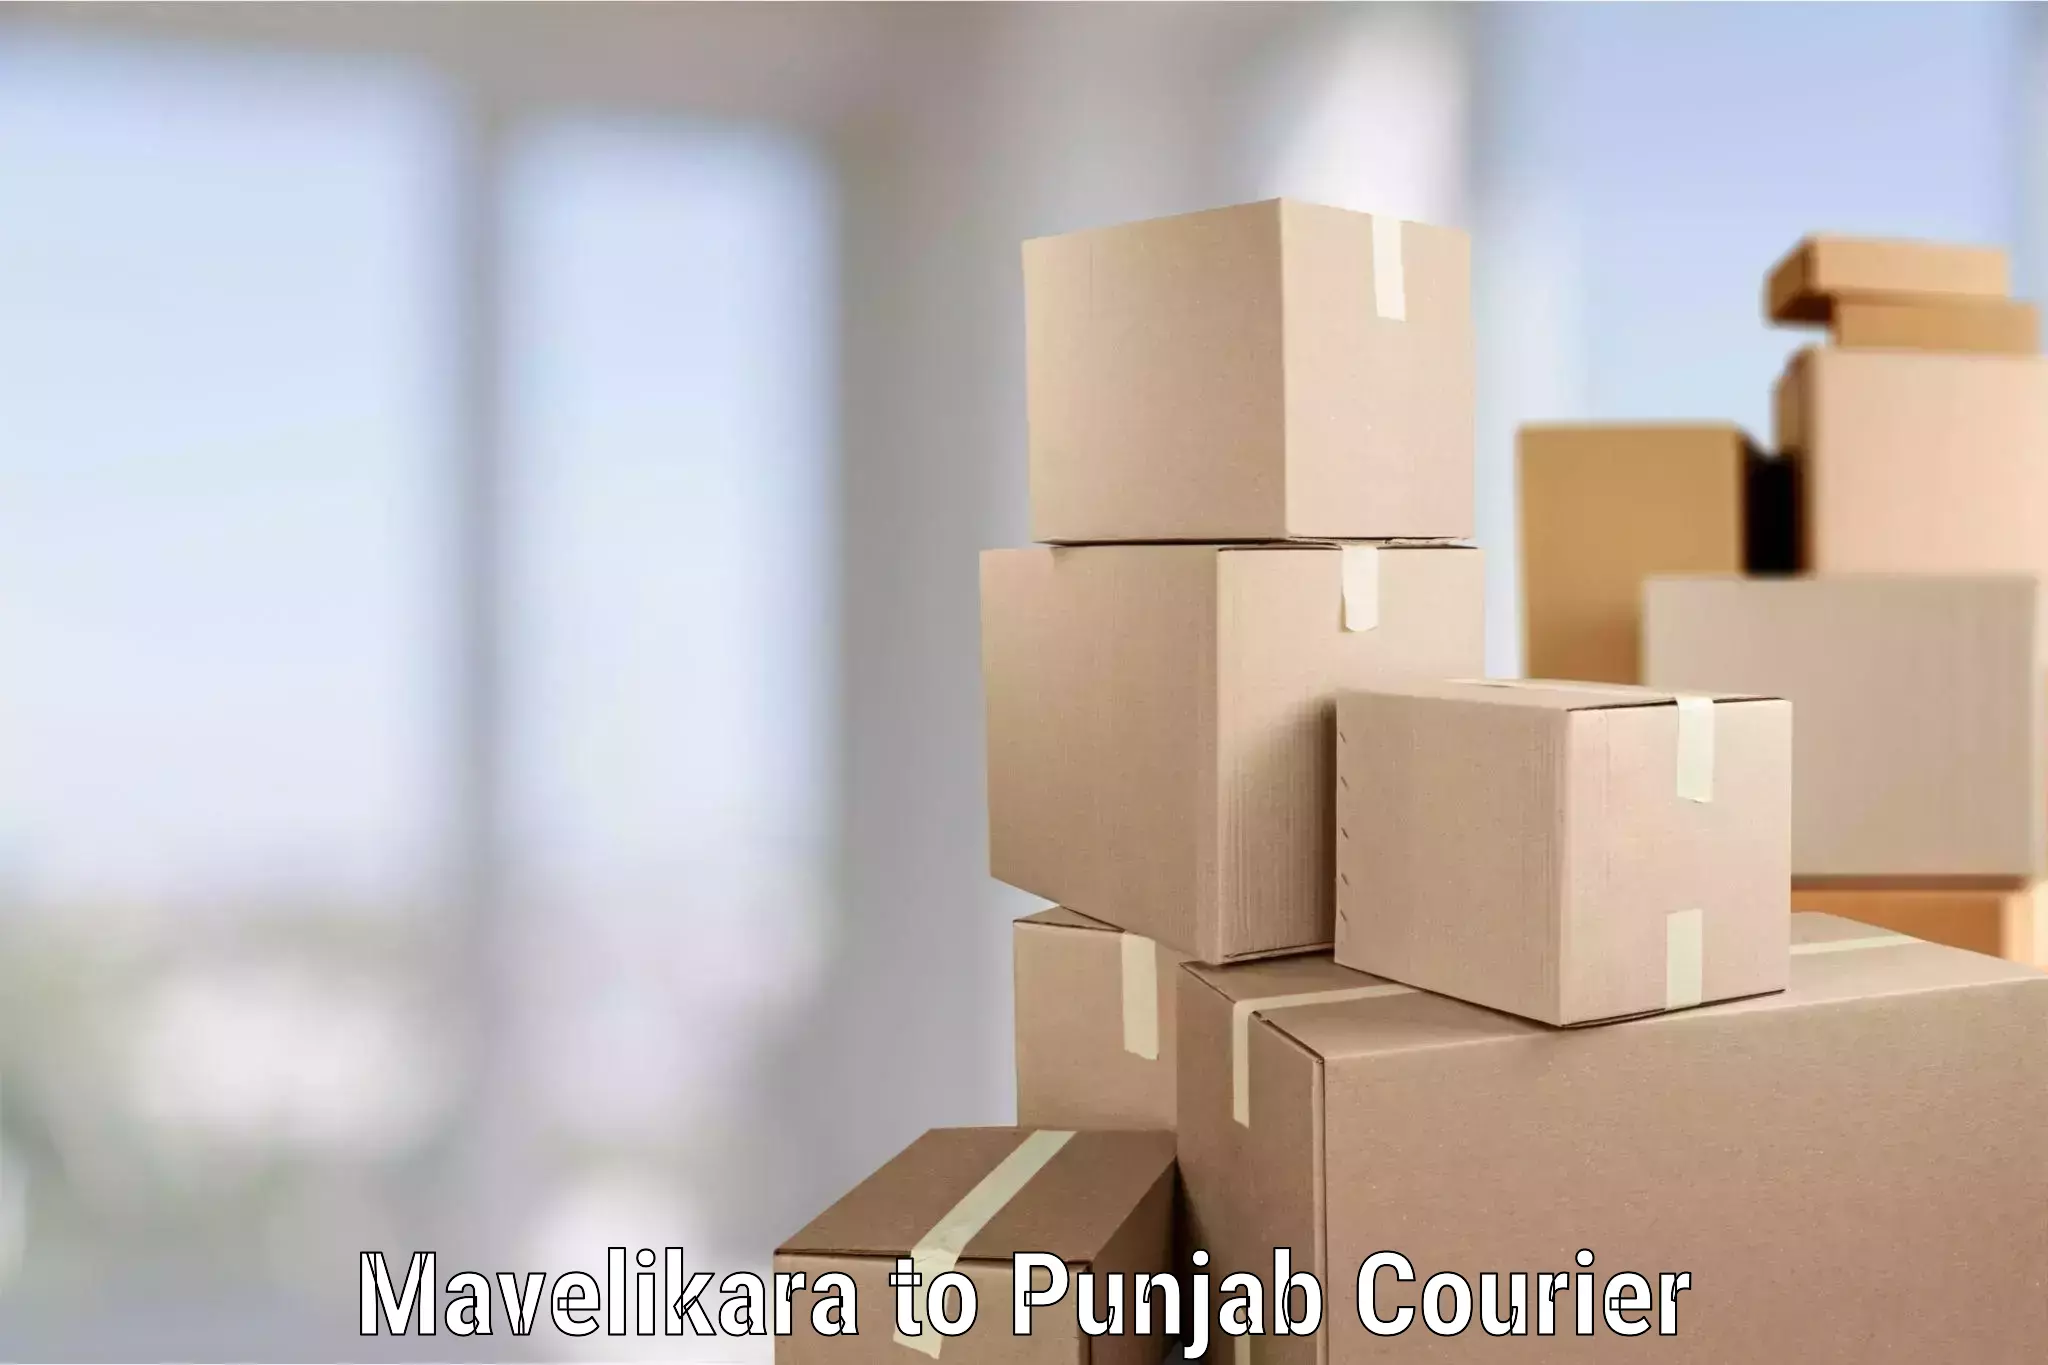 Furniture transport solutions Mavelikara to Punjab